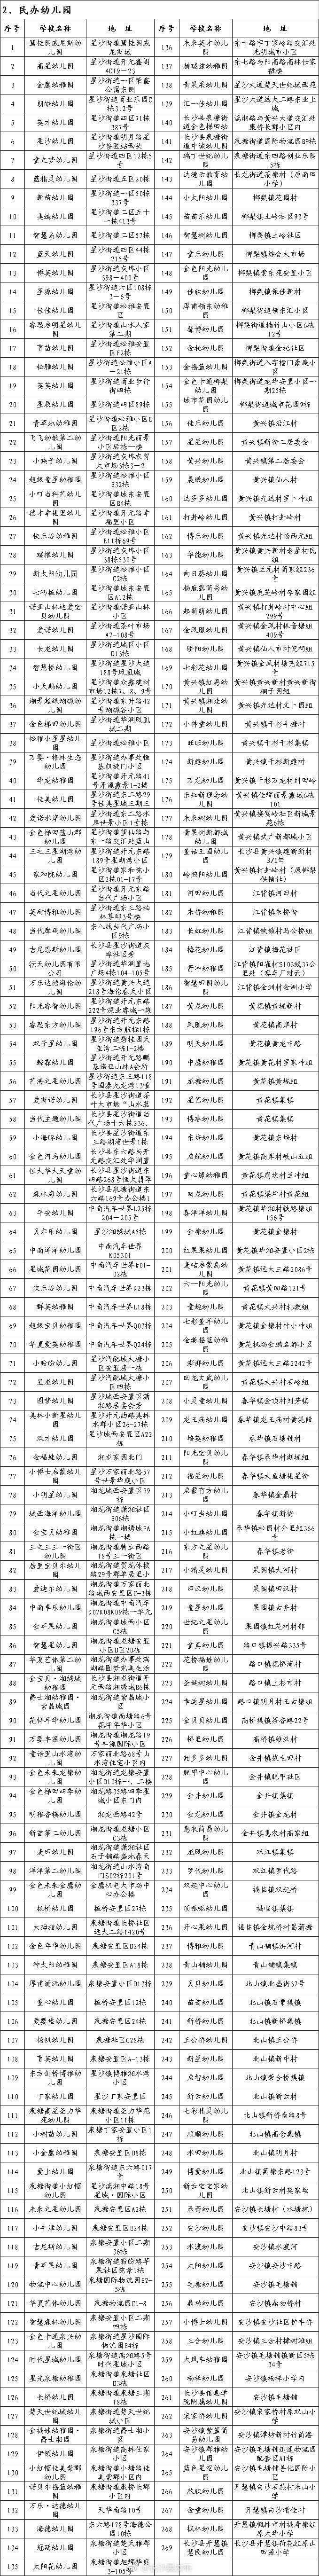 2018年长沙县合法民办学校名单(382家)